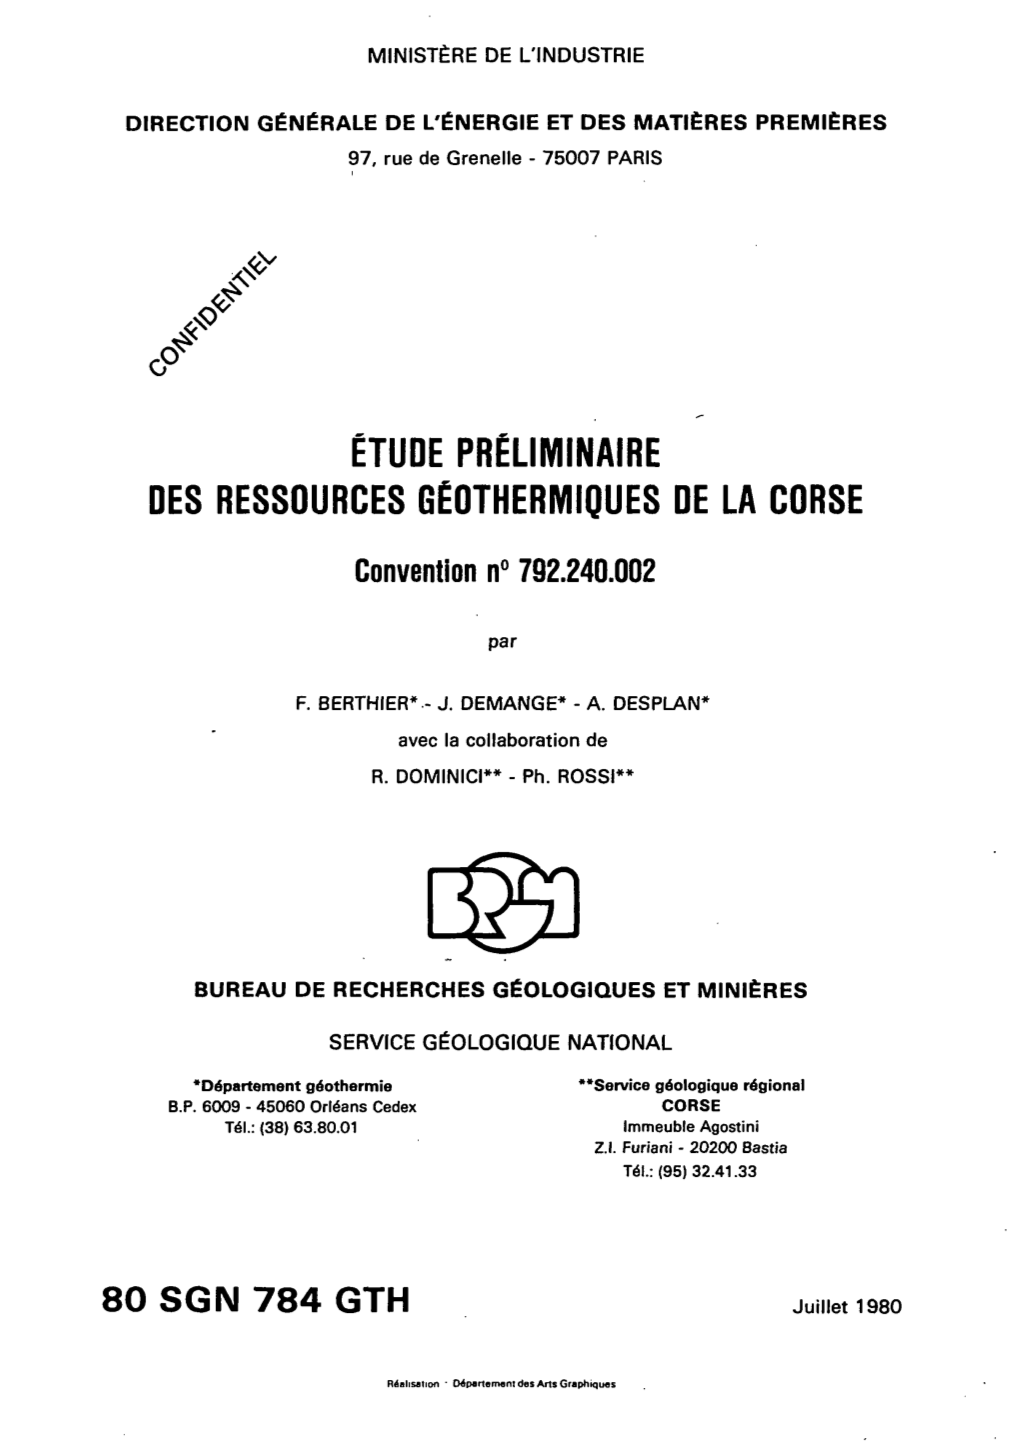 ÉTUDE PRÉLIMINAIRE DES RESSOURCES GEOTHERMIQUES DE LA CORSE Convention N° 792.240.002